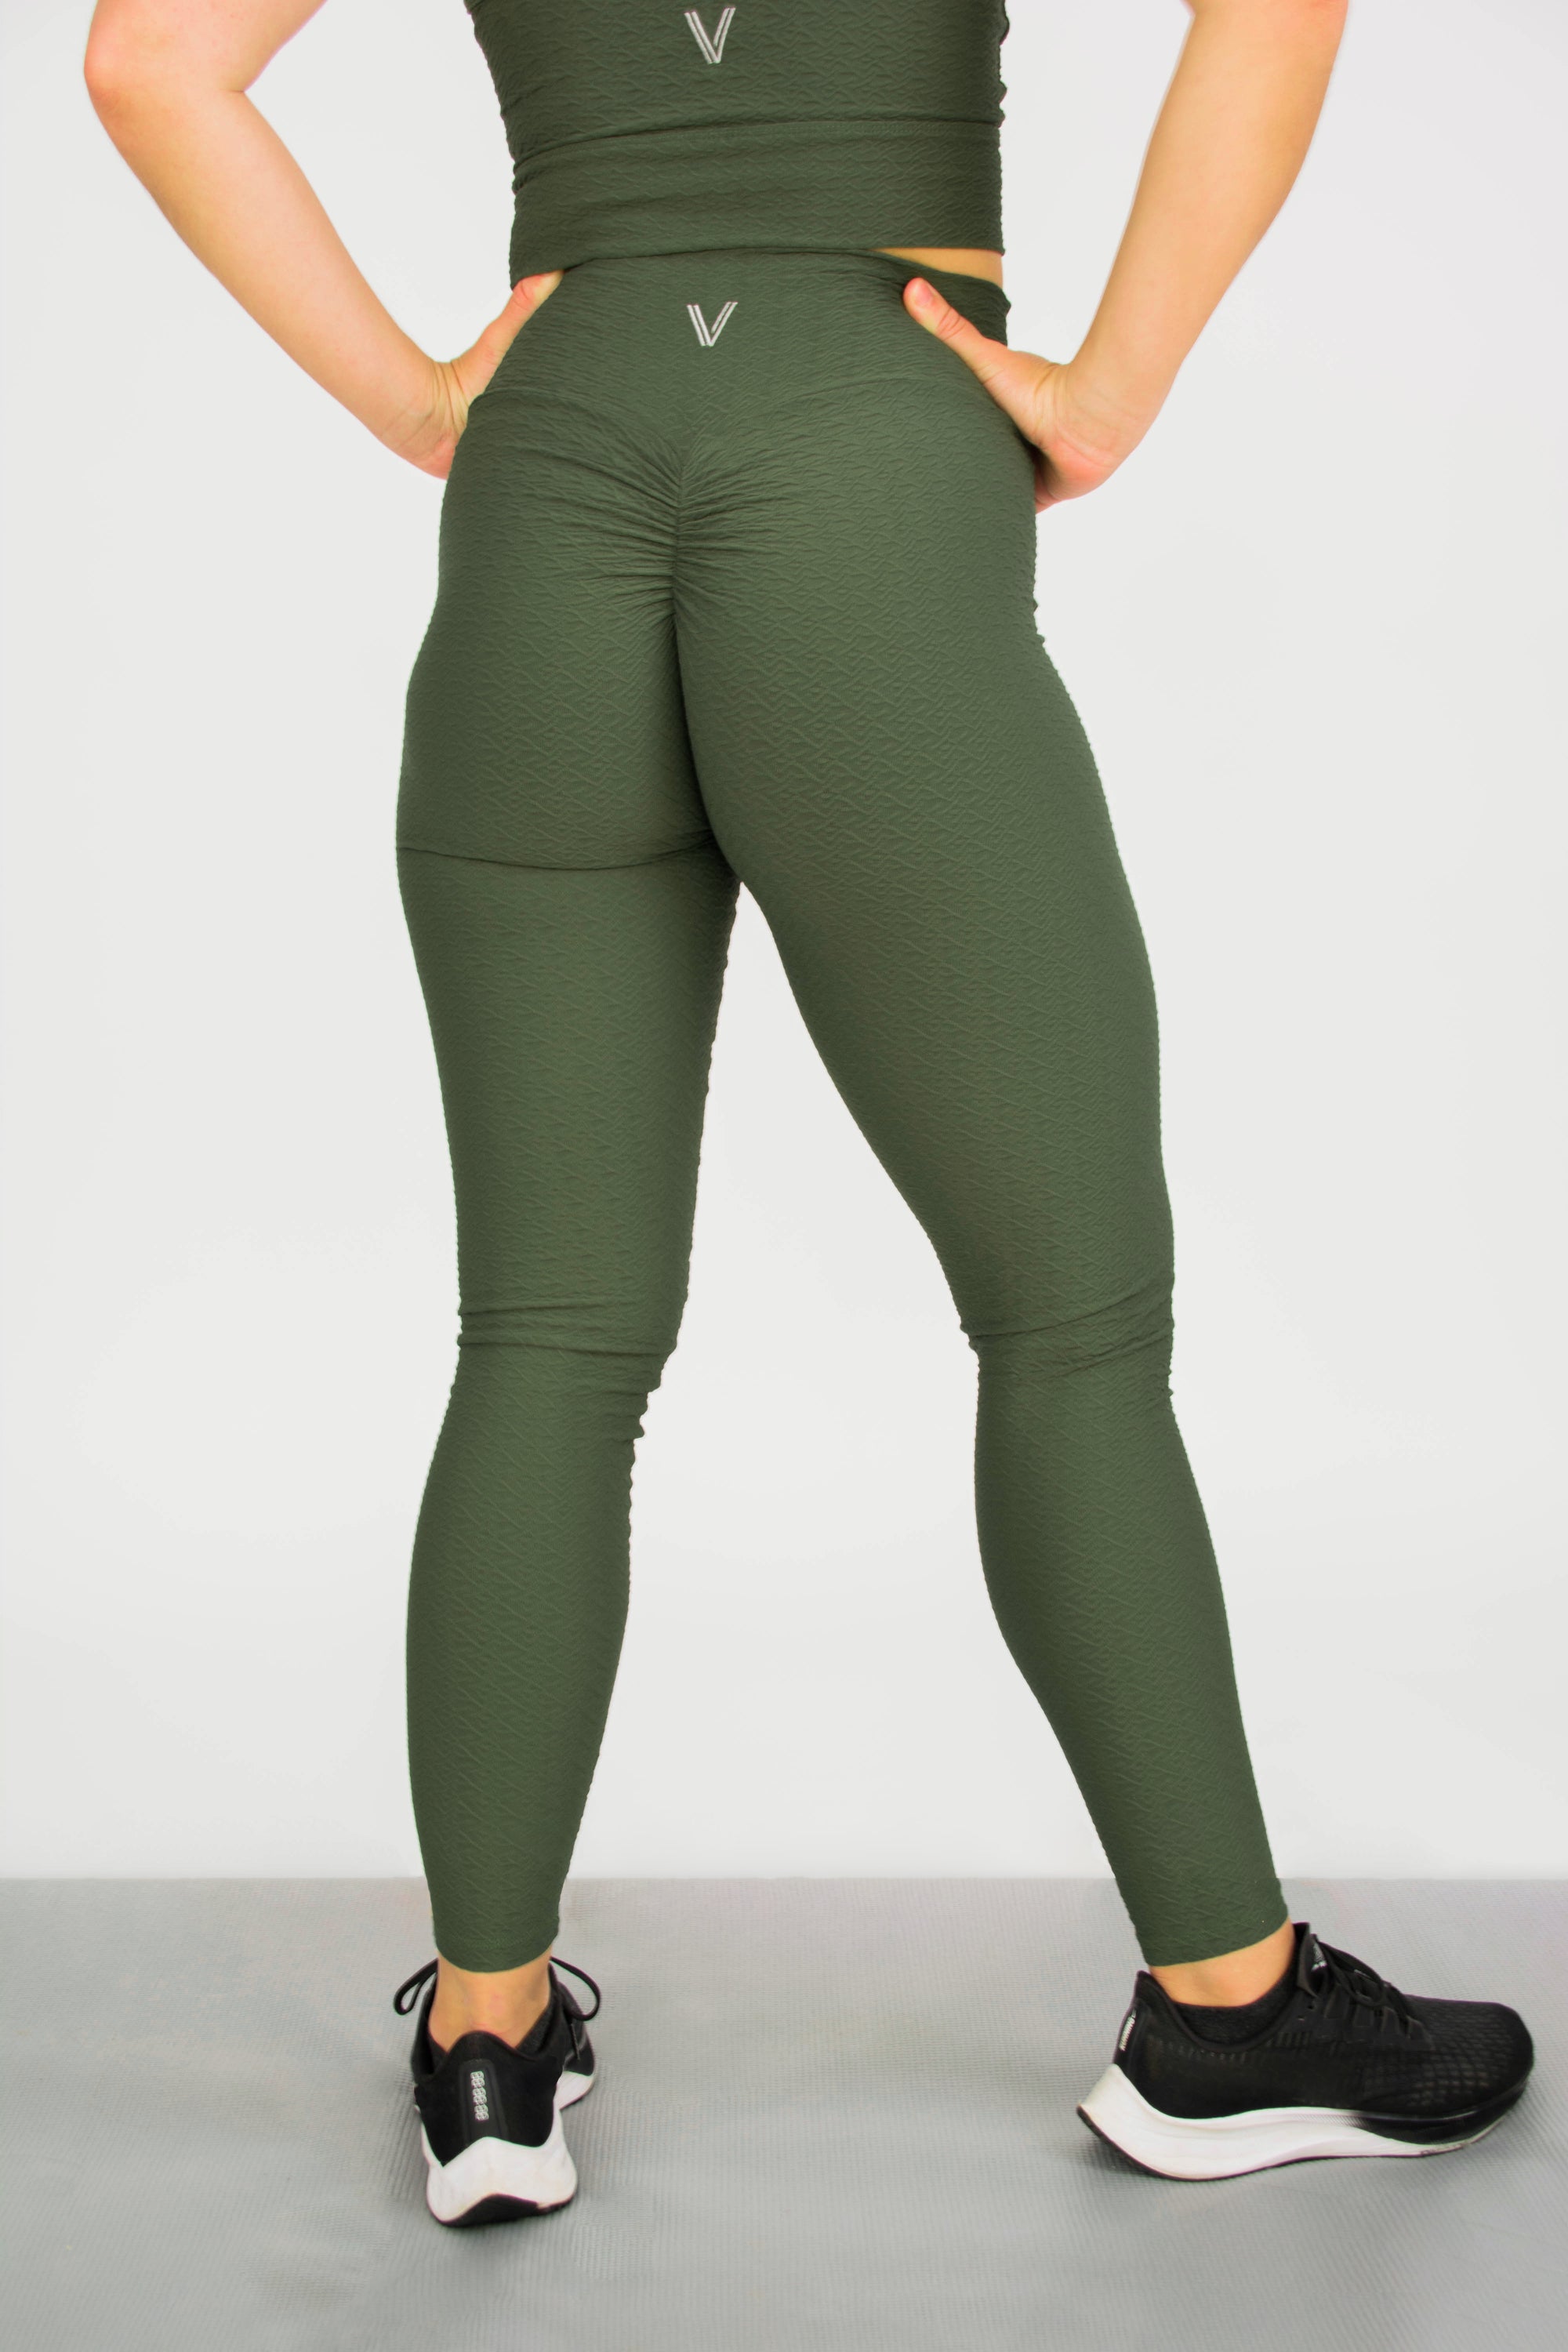 Savvi Fit Ashtanga Leggings Tight Yoga RibbedOlive Green Women's XL 